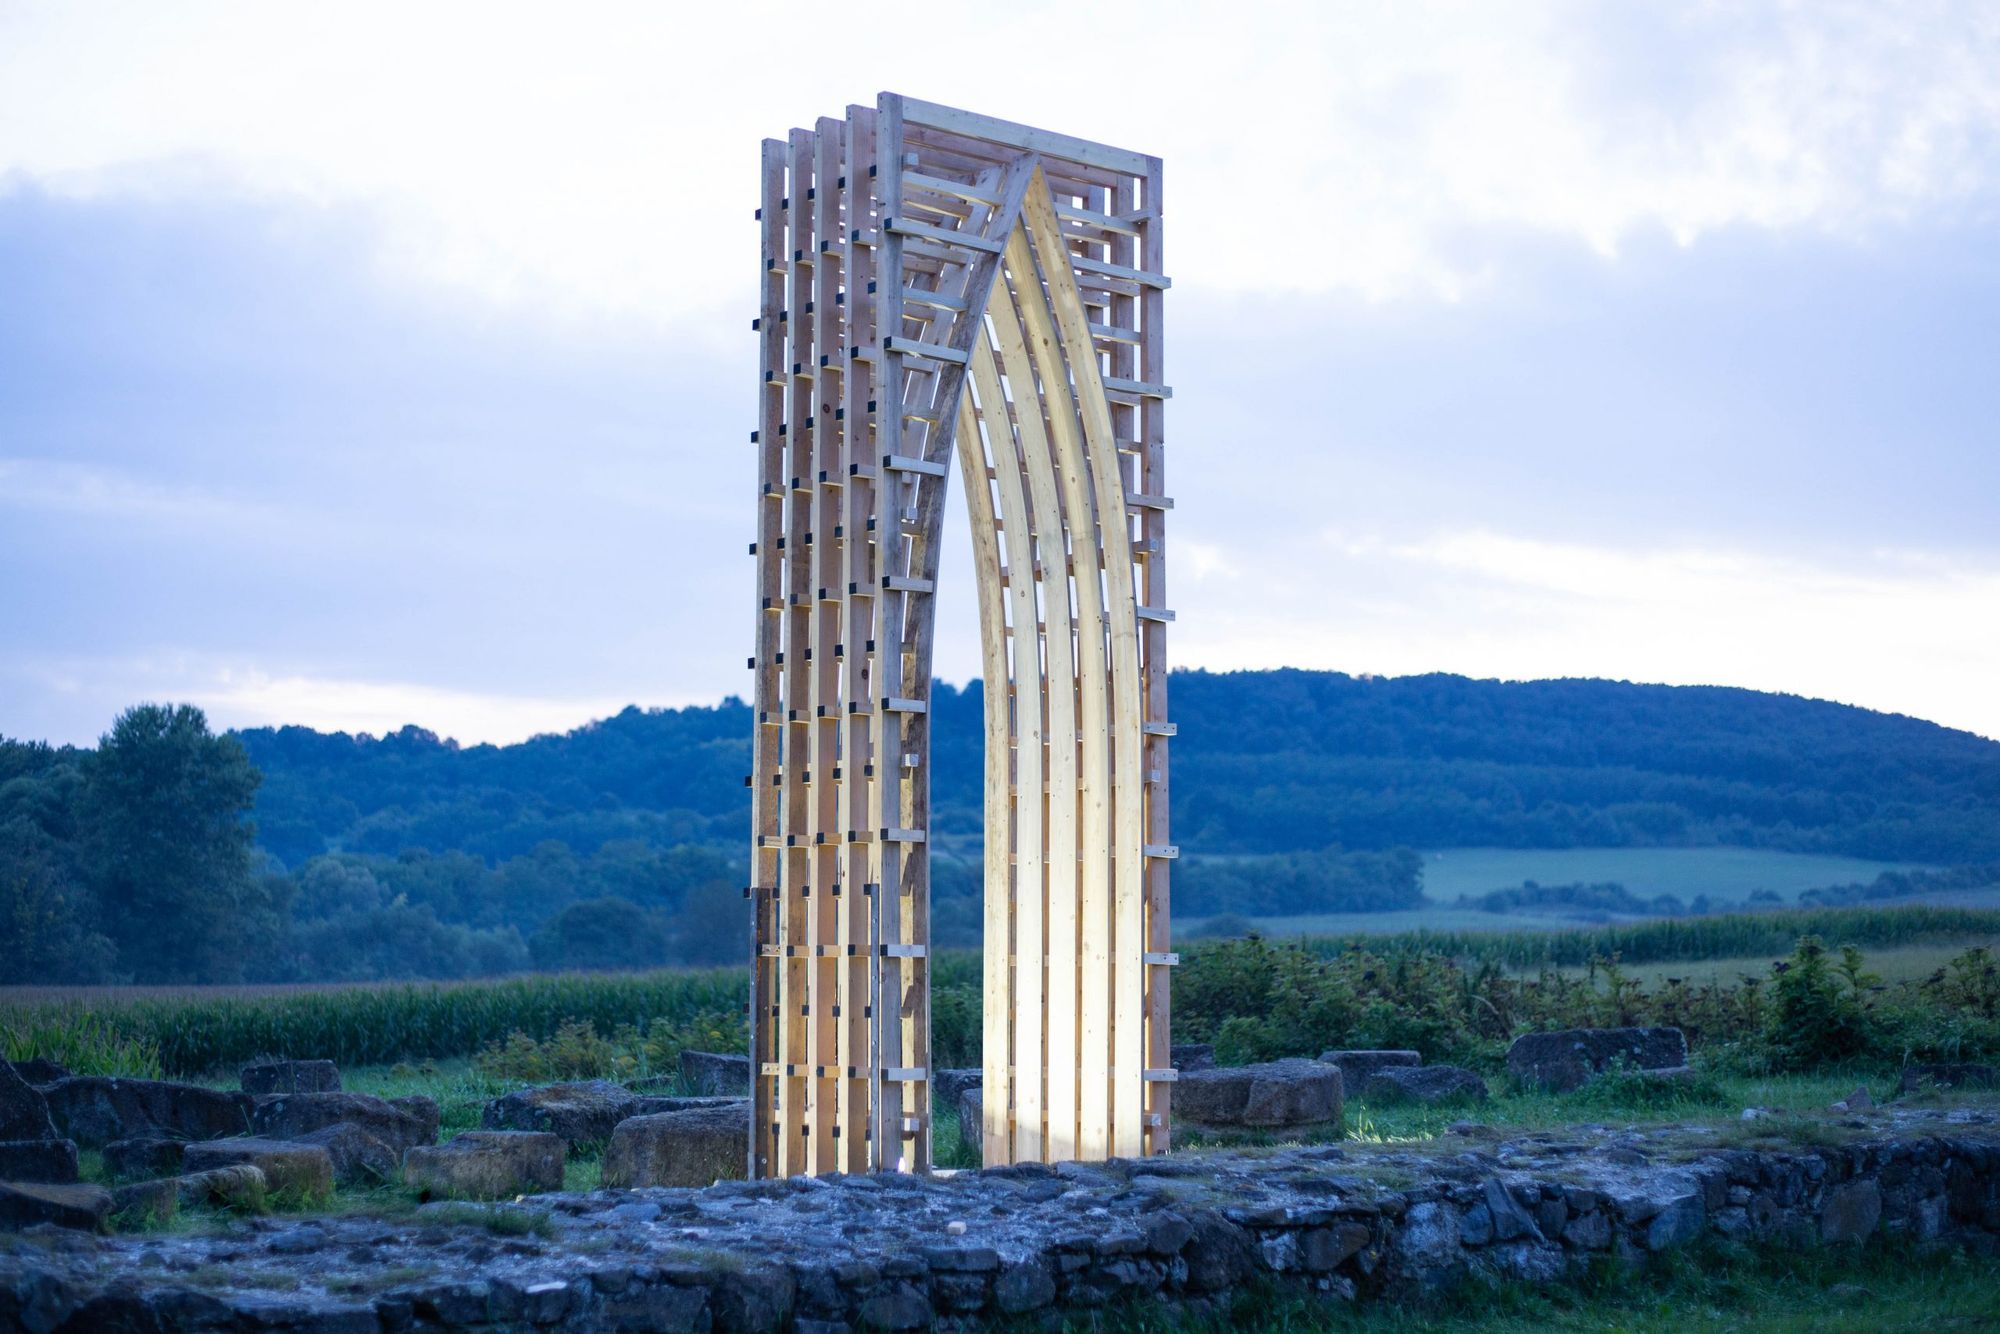 Inspiring installations | Hello Wood Off-Mustra 2020